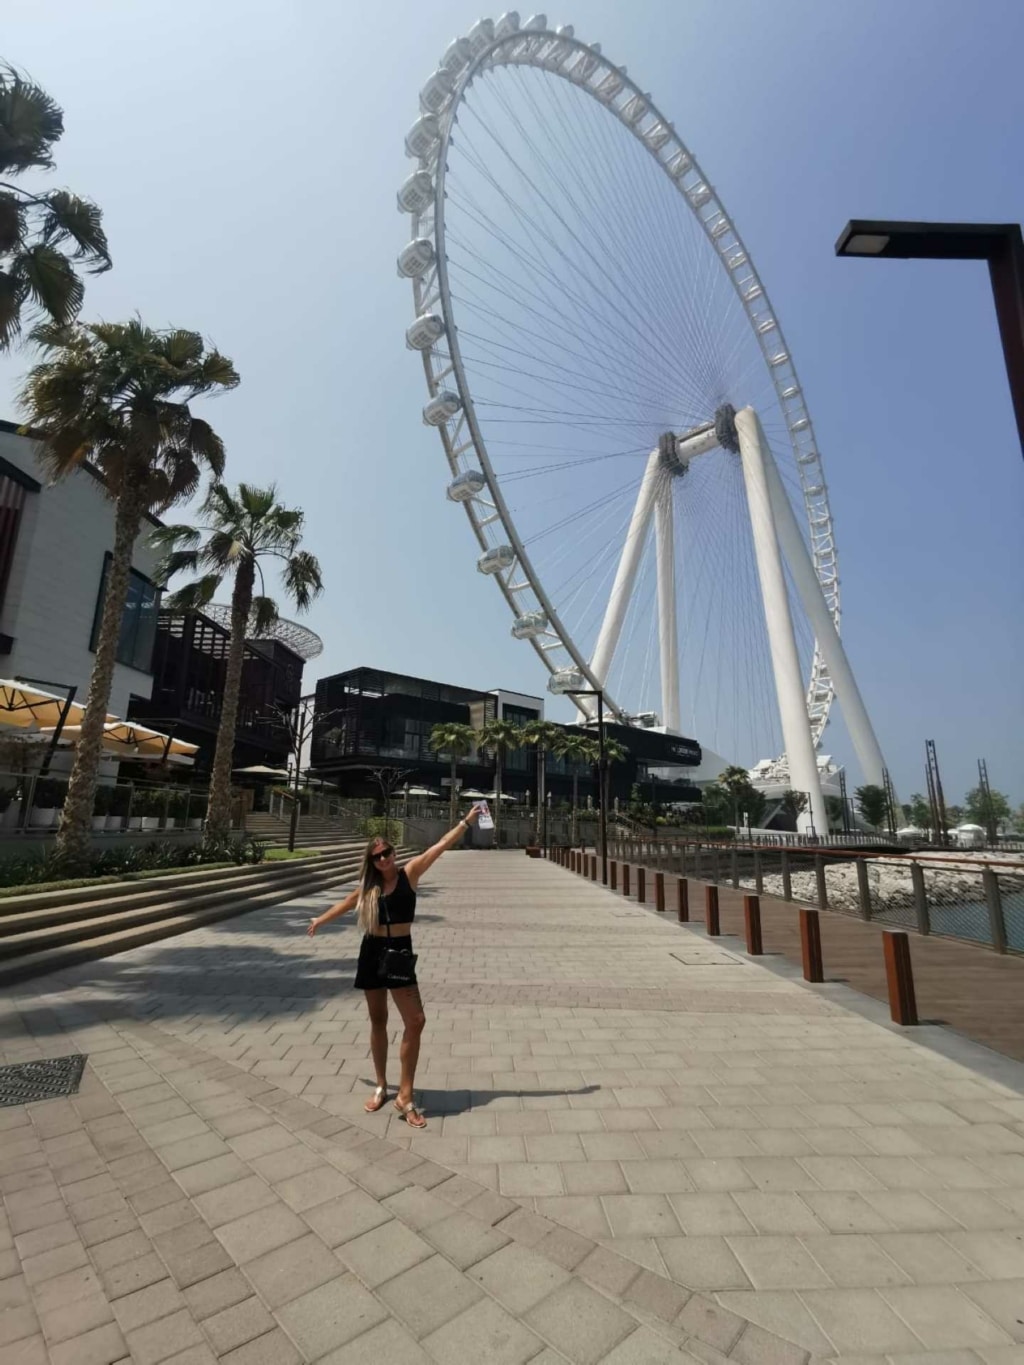 Yvonne, collaboratrice Hairdreams, pose devant une grande roue à Dubaï